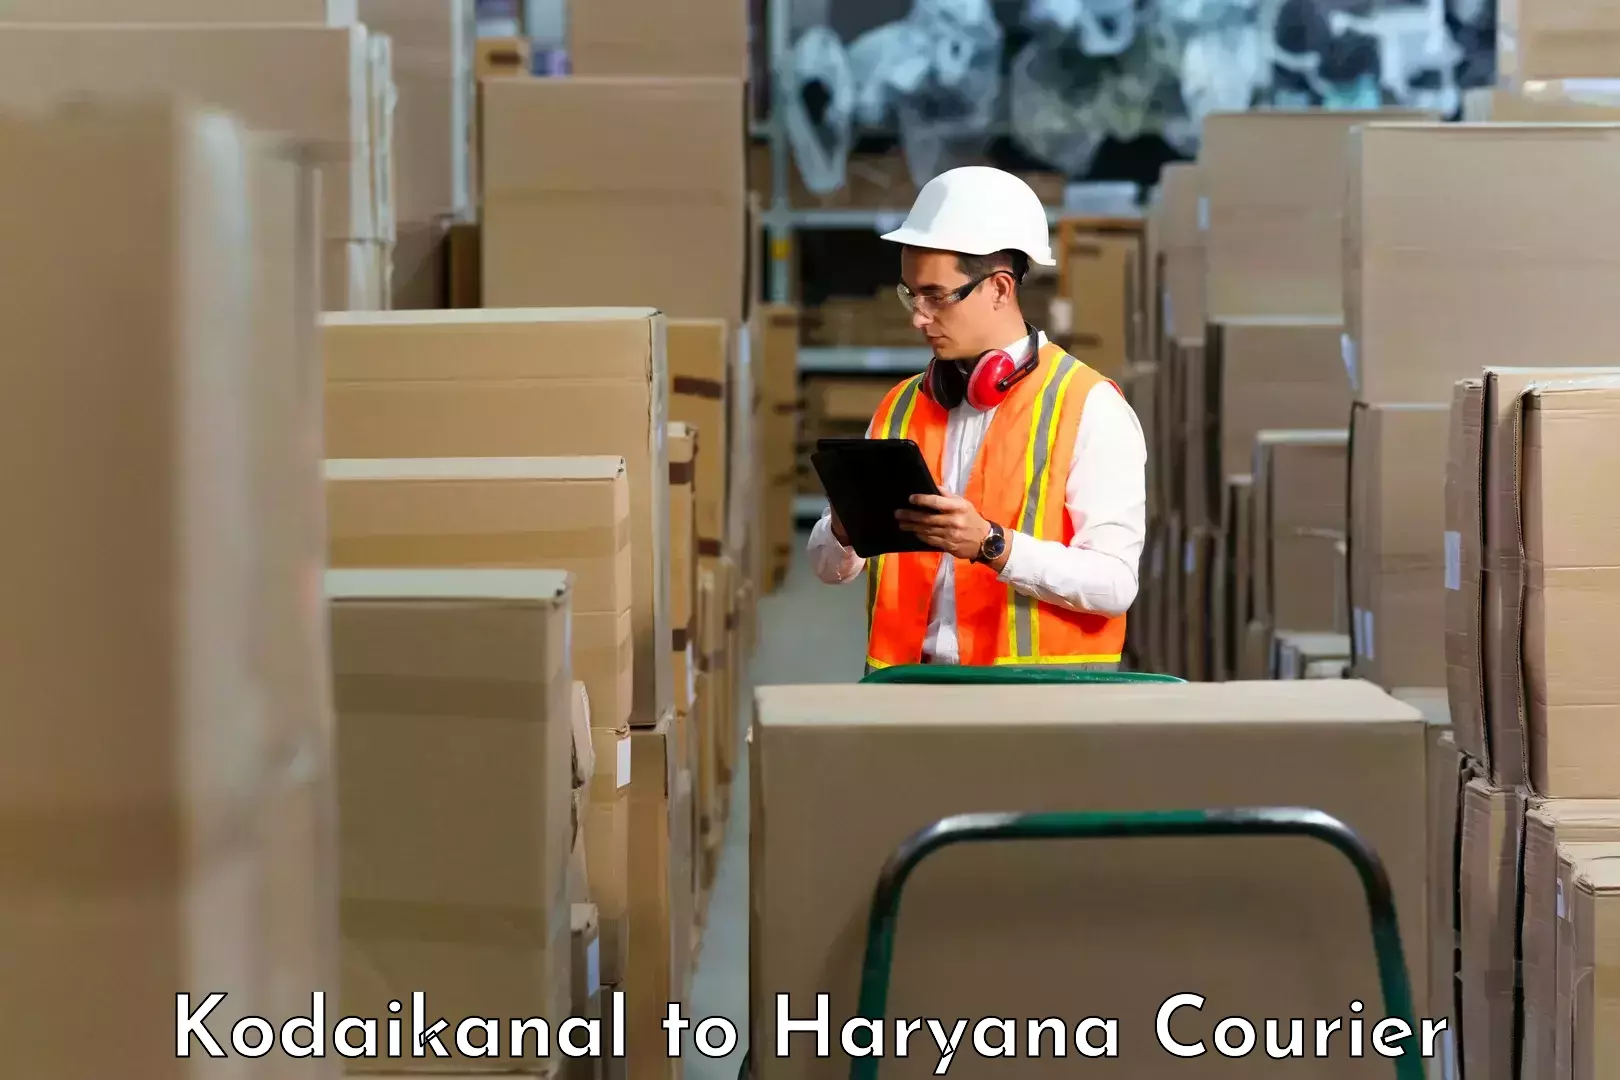 Personalized courier experiences Kodaikanal to Haryana